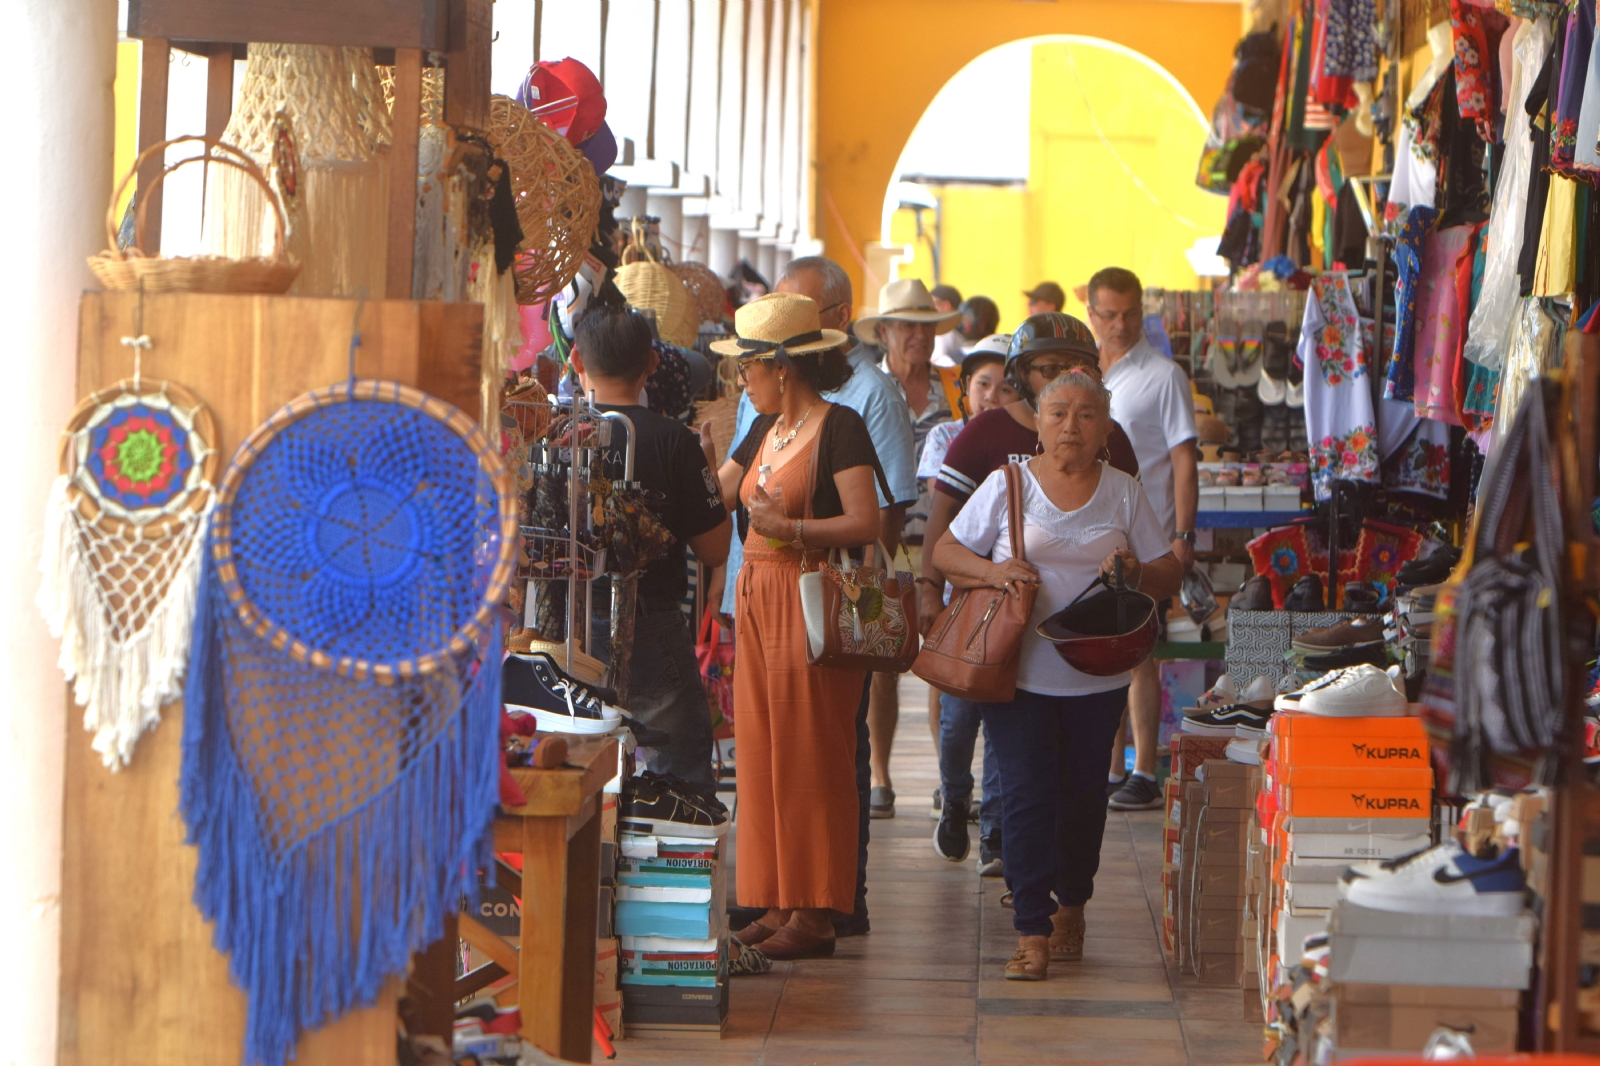 Seguridad en Yucatán, el 'gancho' de las agencias de viajes para atraer turistas